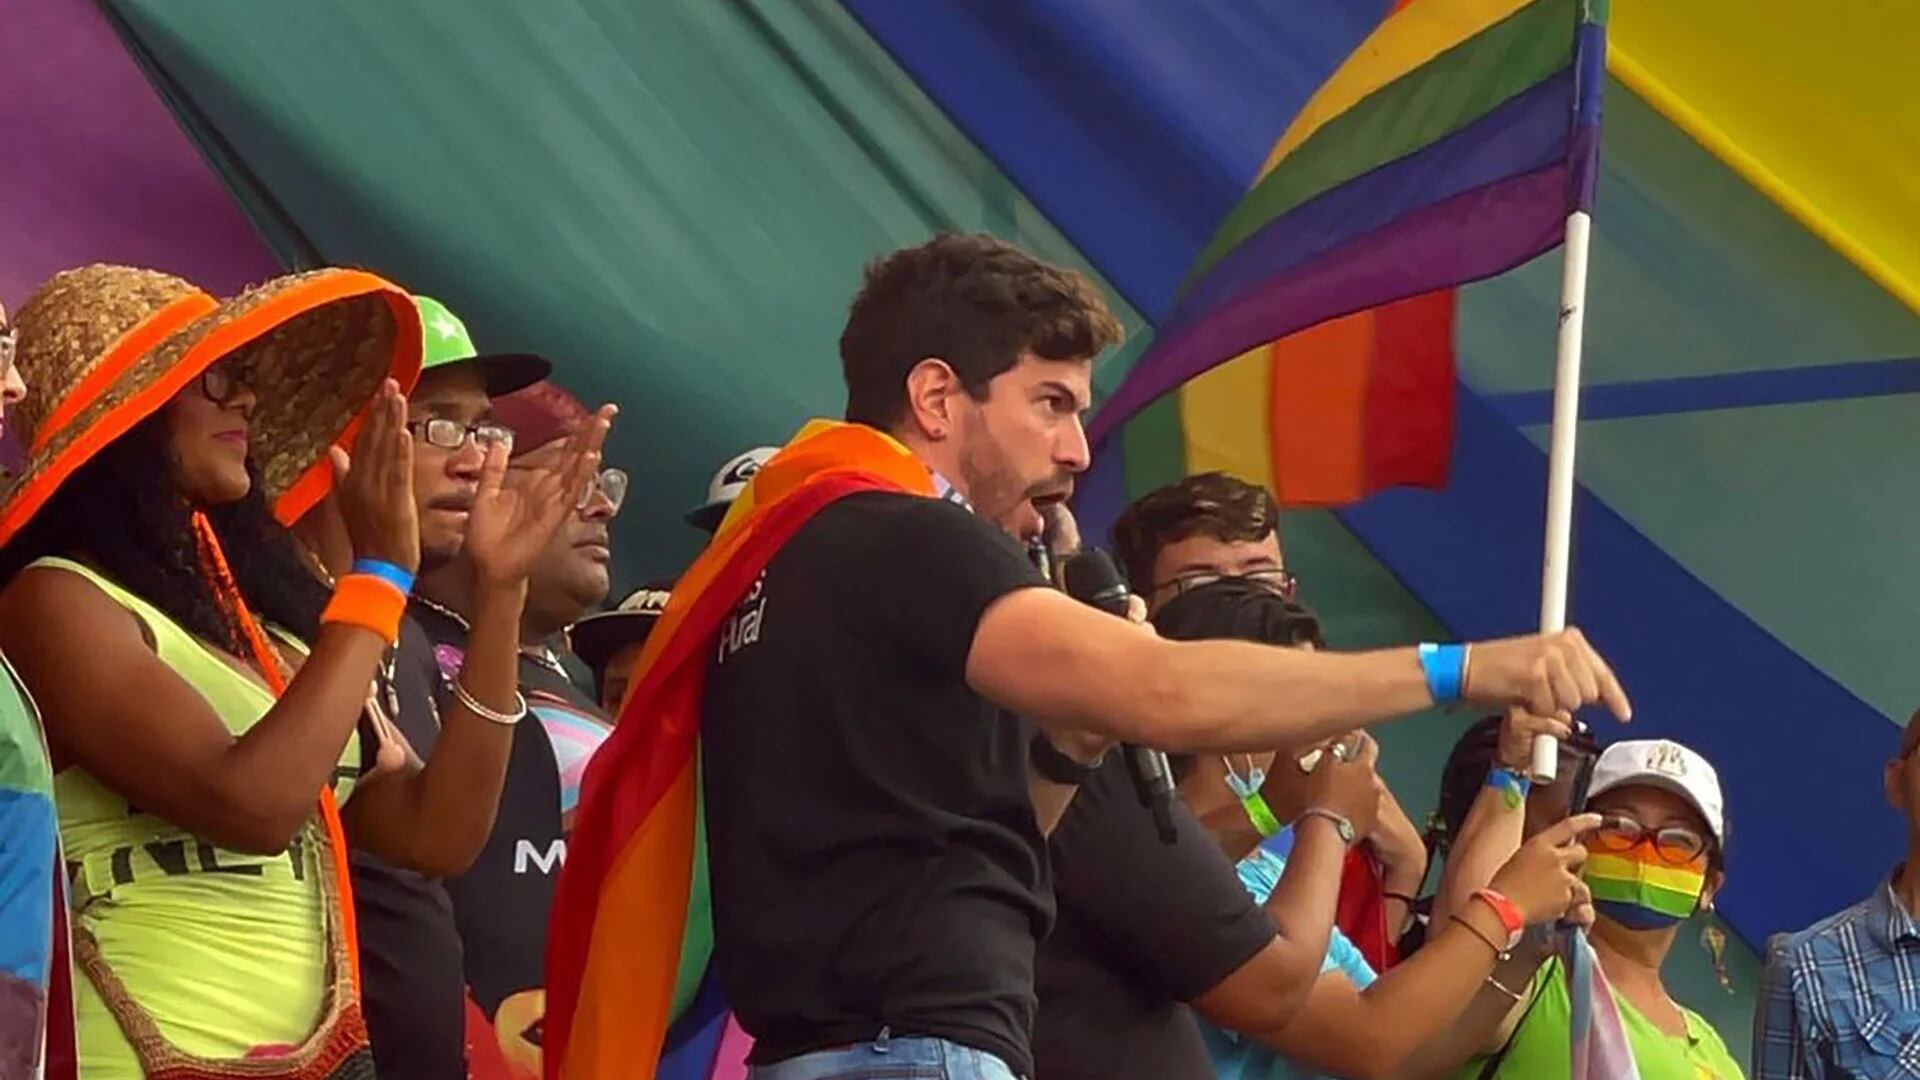 Pese a no encontrar respaldo político, la comunidad LGBTQ+ en Venezuela mantiene el reclamo por sus derechos: “La sociedad está preparada”